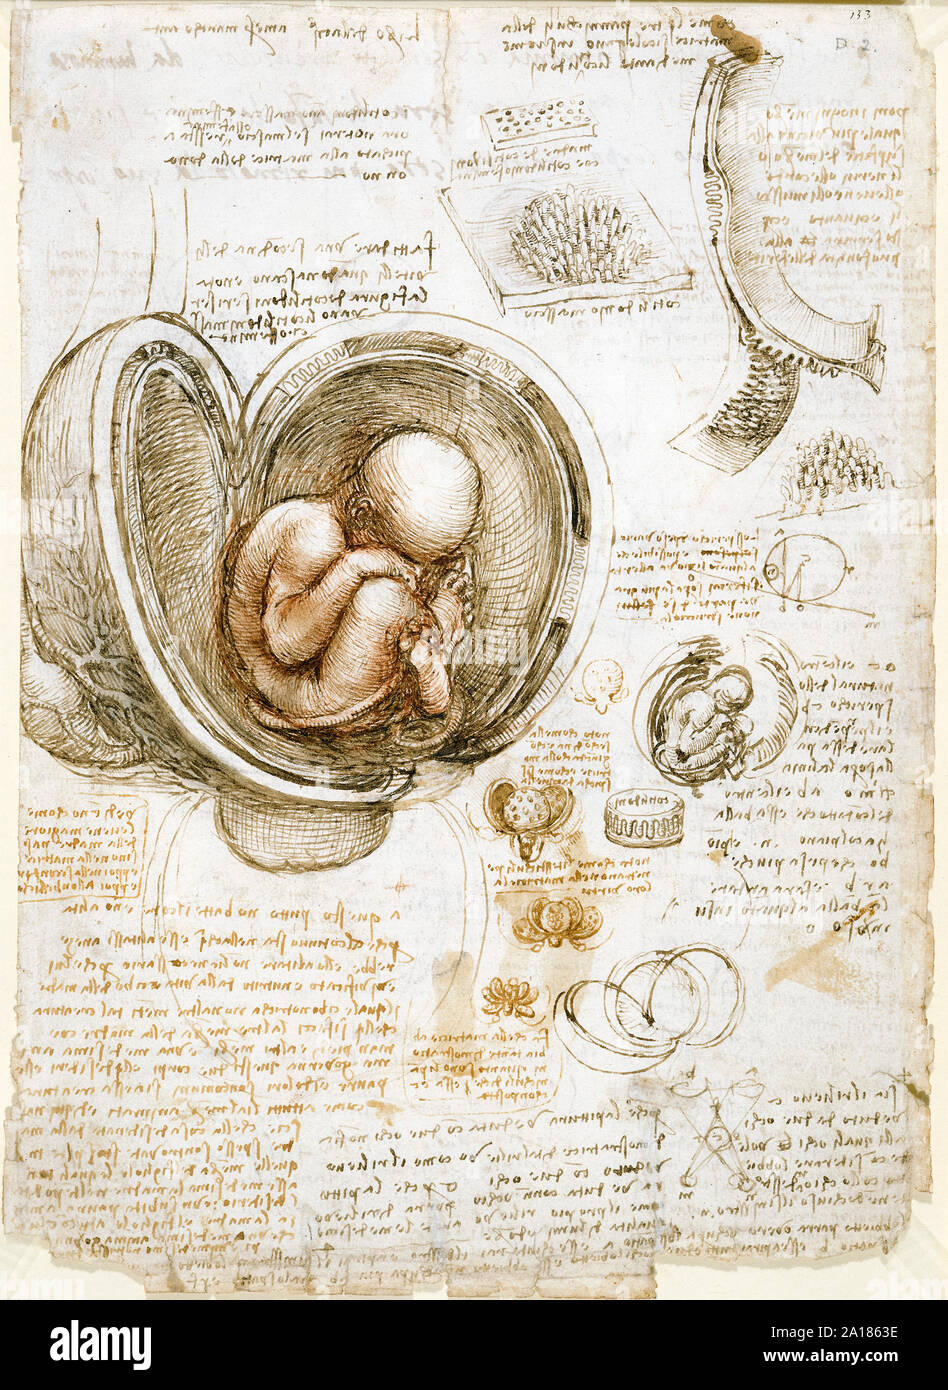 Des études sur les foetus dans l'utérus par Léonard de Vinci (1452-1519) vers 1511 montrant le foetus humain dans un siège à l'intérieur d'un utérus disséqués. Banque D'Images